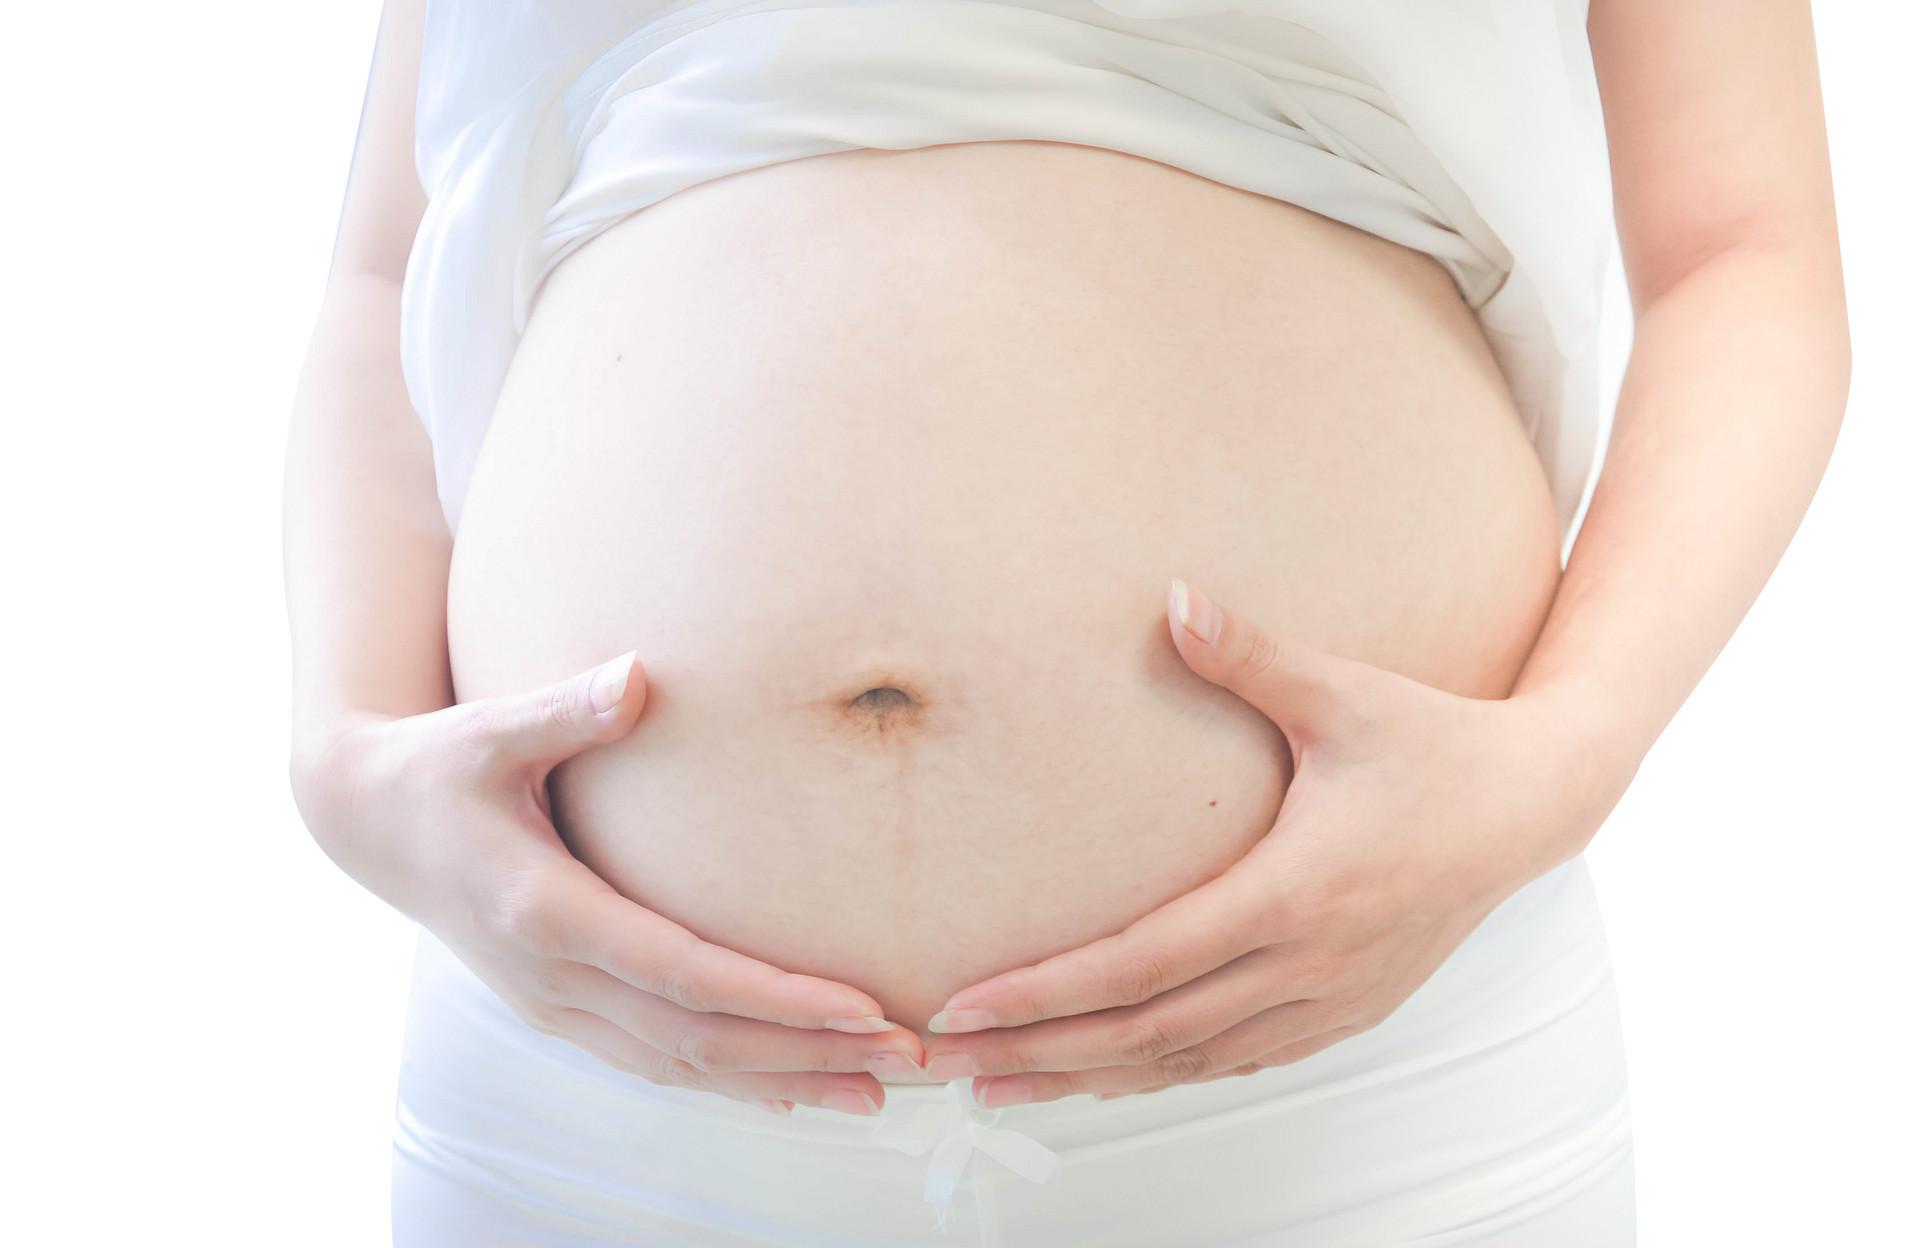 胎动频繁是因为宝宝太活泼了吗